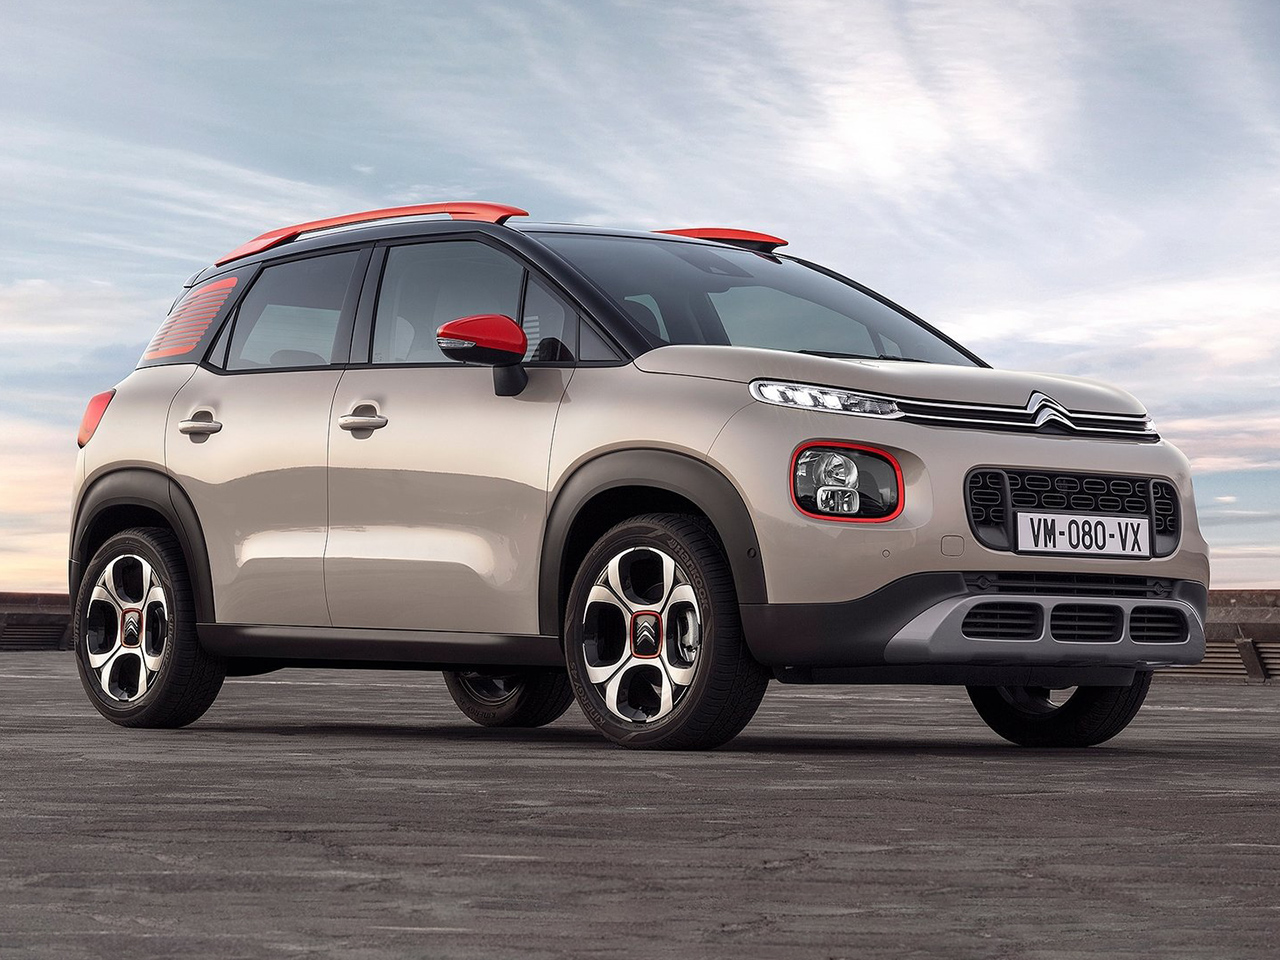 Citroën C3 antiguo: Evolución al actual